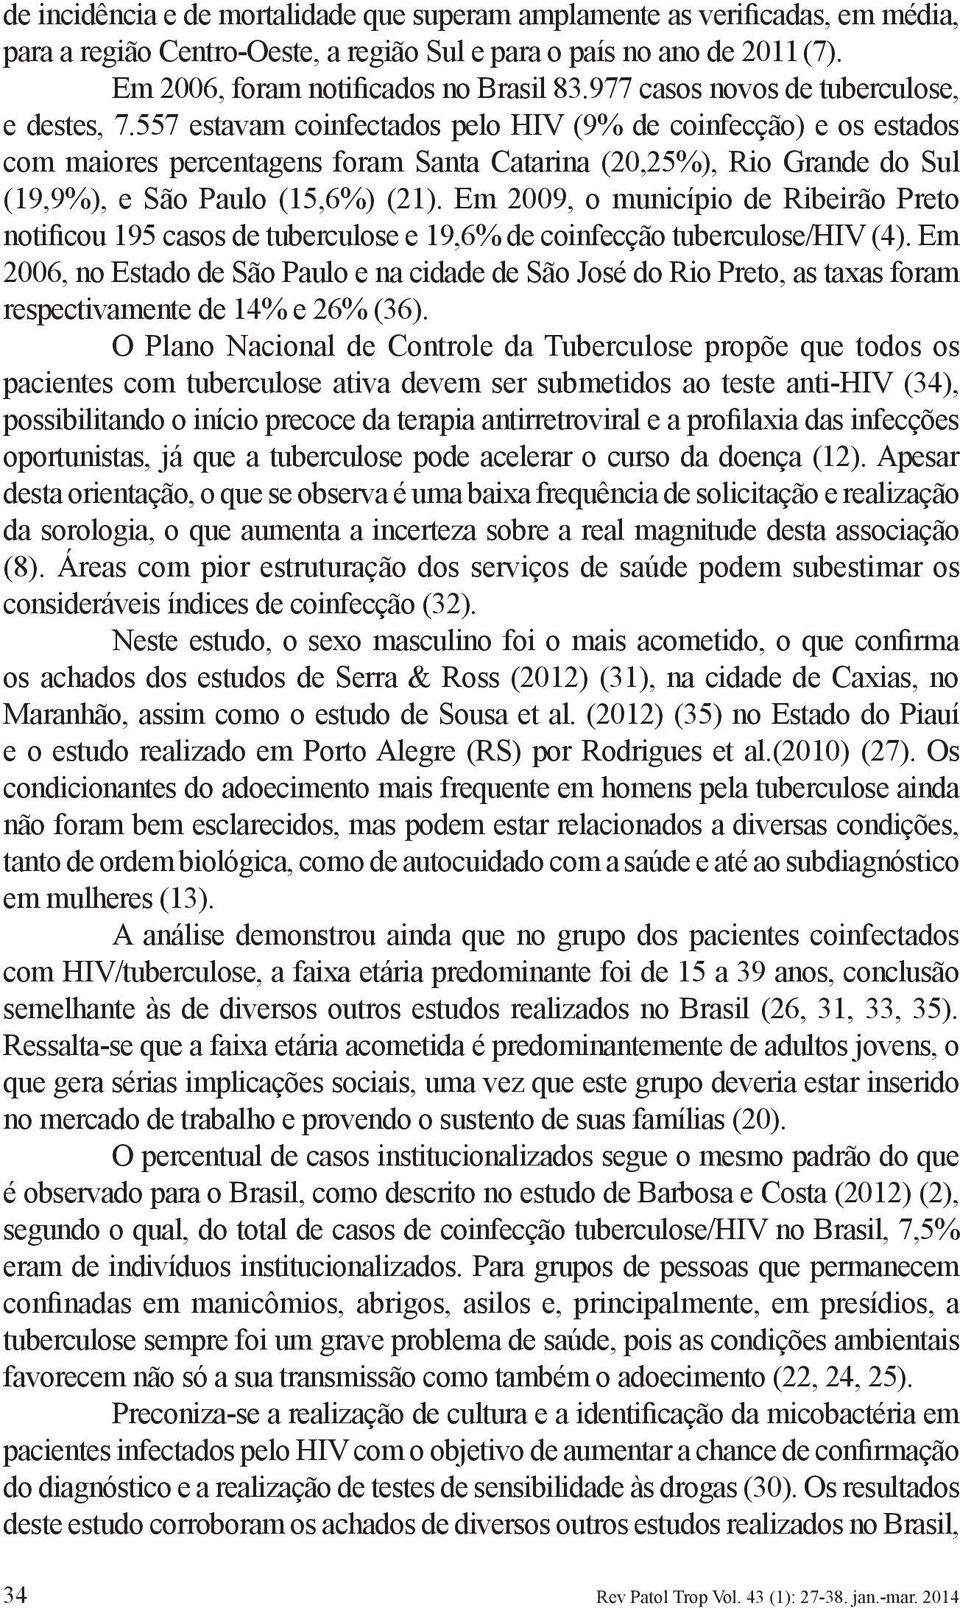 557 estavam coinfectados pelo HIV (9% de coinfecção) e os estados com maiores percentagens foram Santa Catarina (20,25%), Rio Grande do Sul (19,9%), e São Paulo (15,6%) (21).